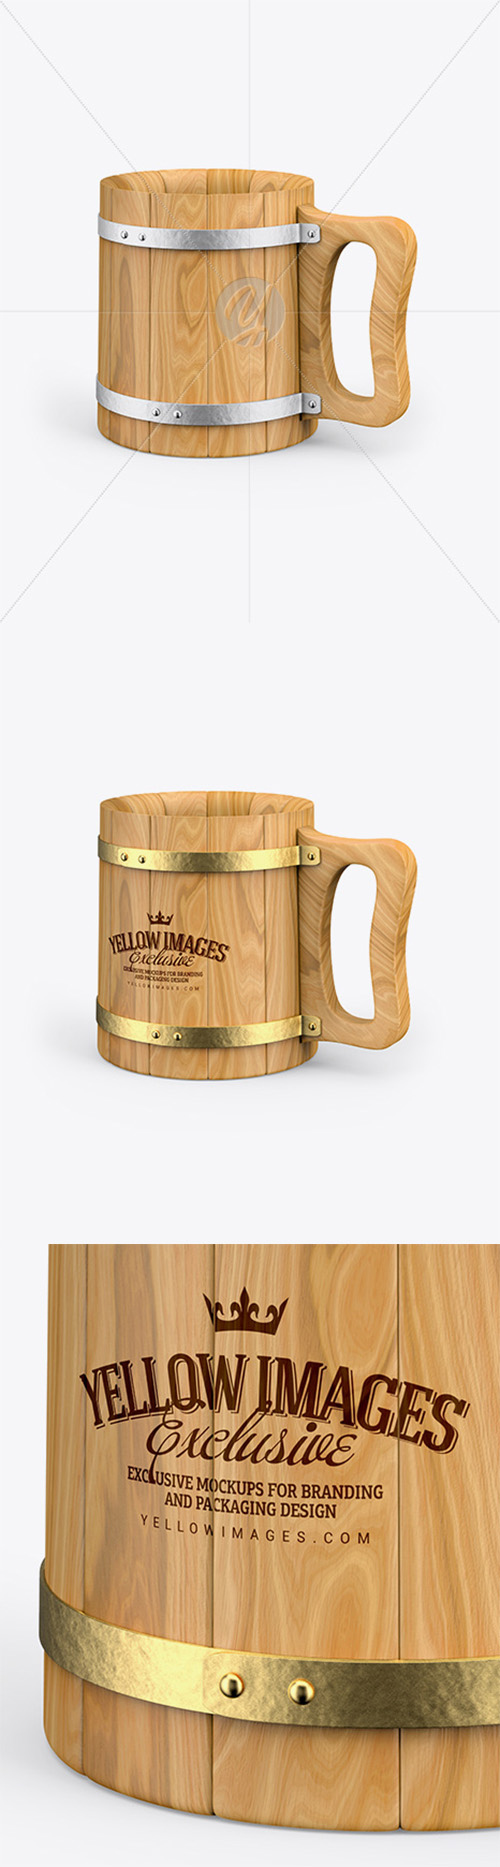 Wooden Mug Mockup 36364 Layered TIF